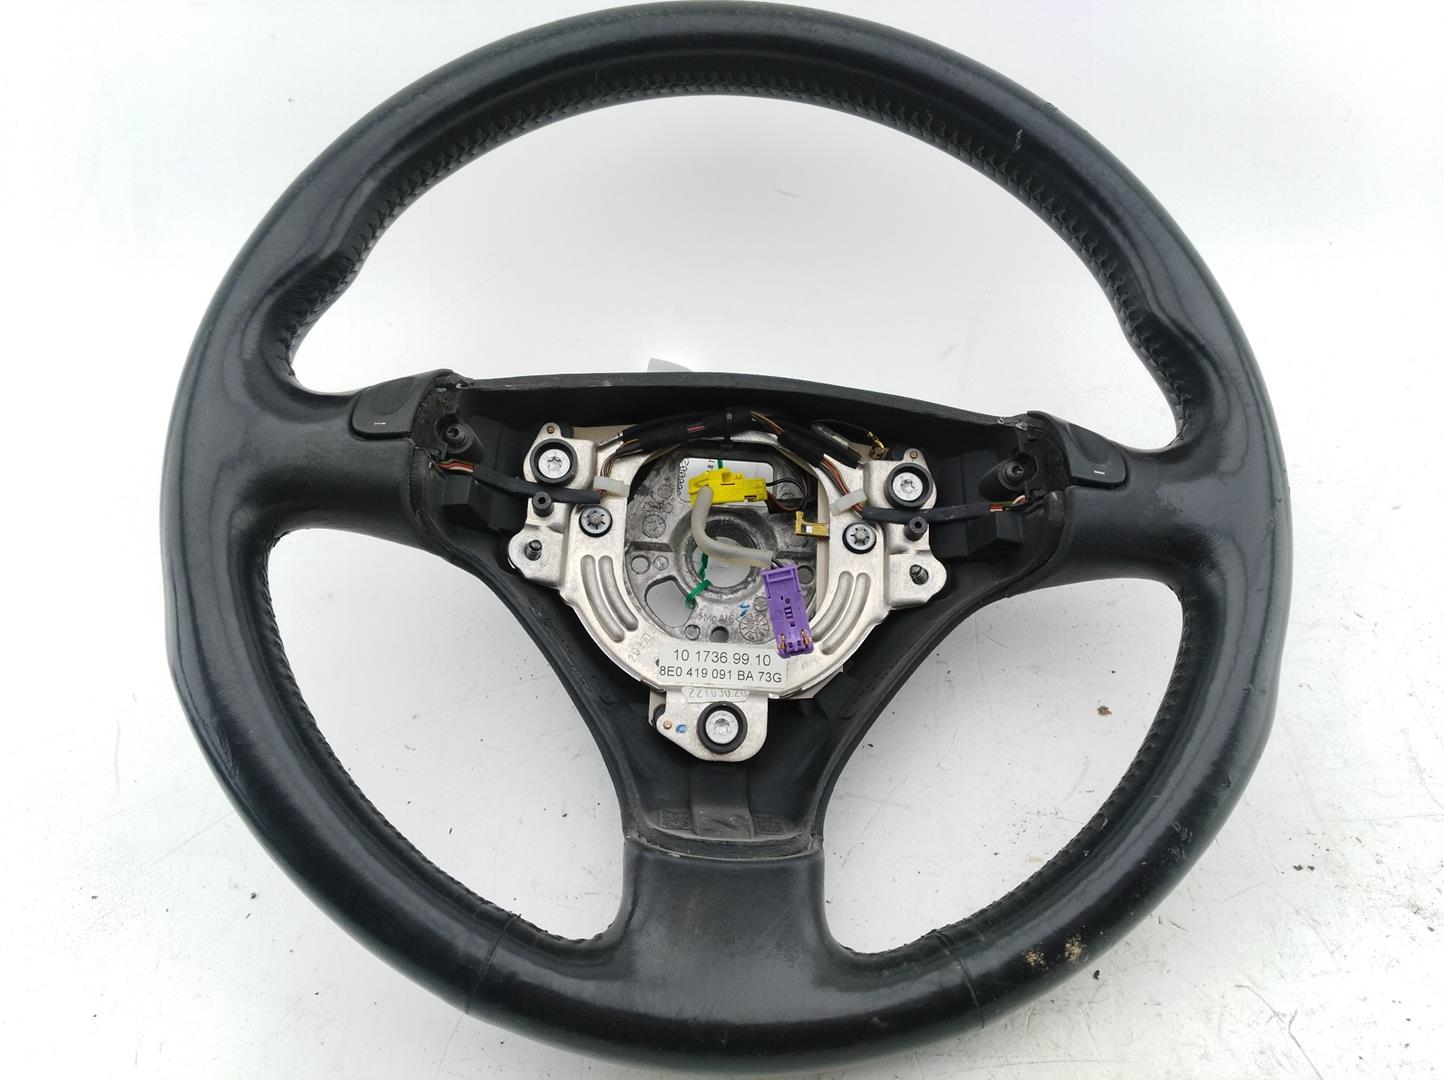 AUDI A4 B6/8E (2000-2005) Steering Wheel 8E0419091BA, 8E0419091BA, 8E0419091BA 24667121